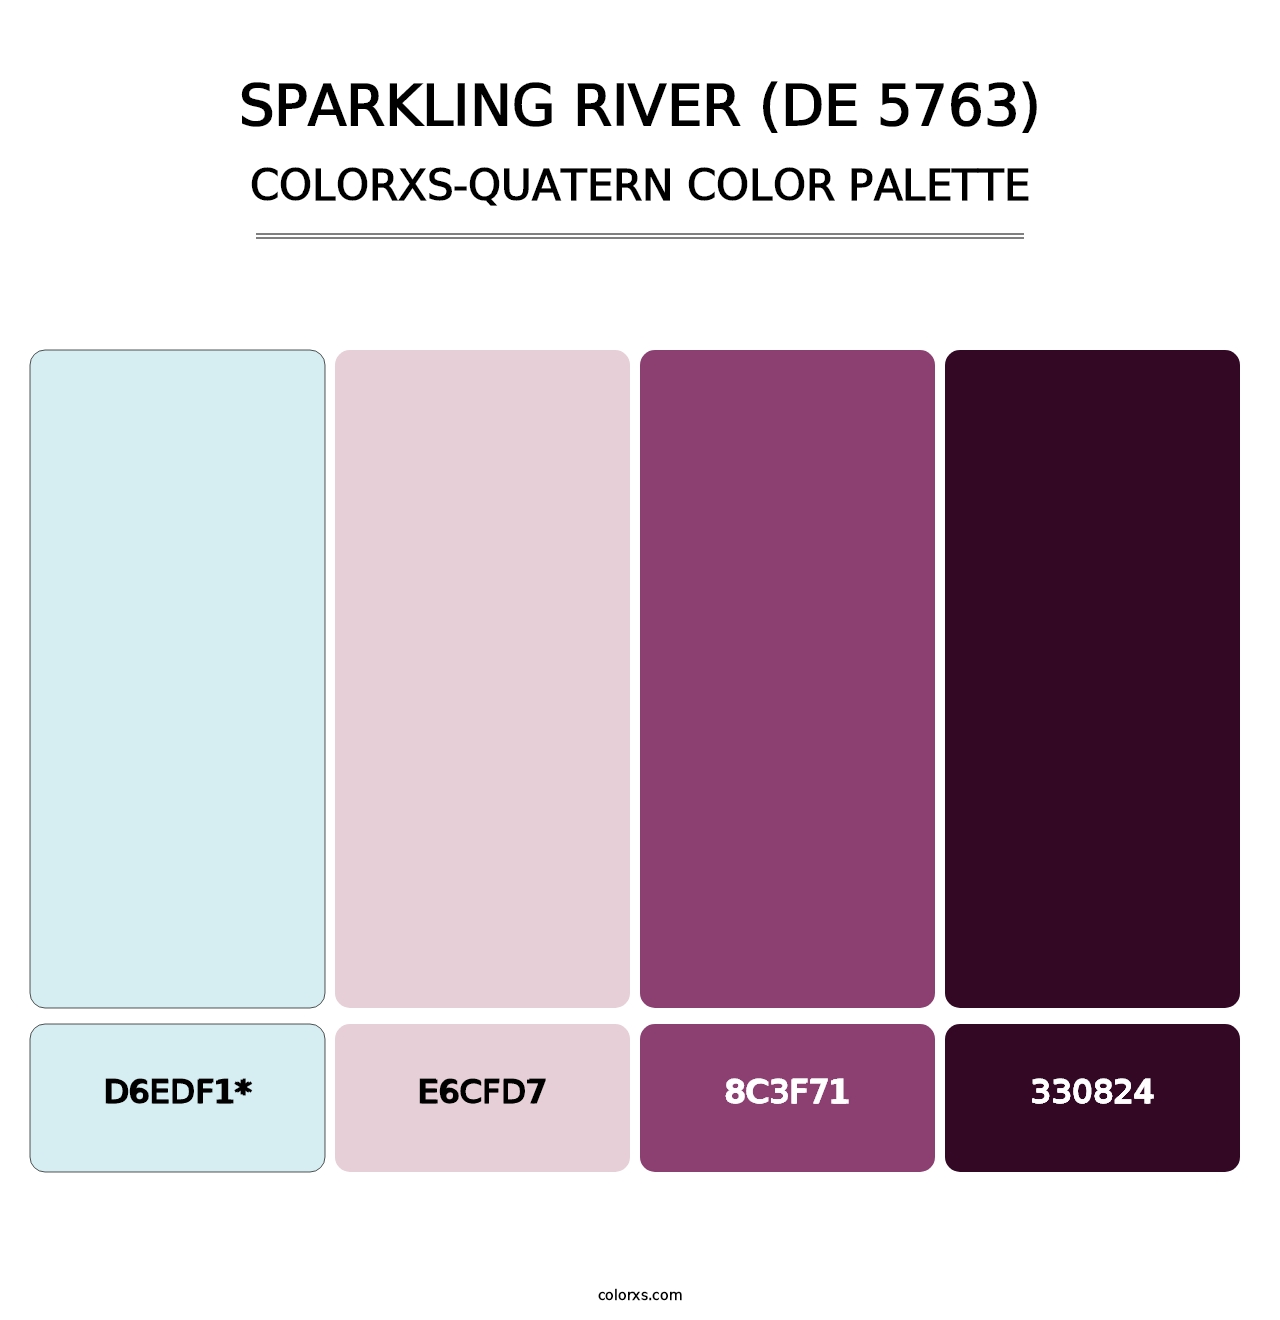 Sparkling River (DE 5763) - Colorxs Quatern Palette